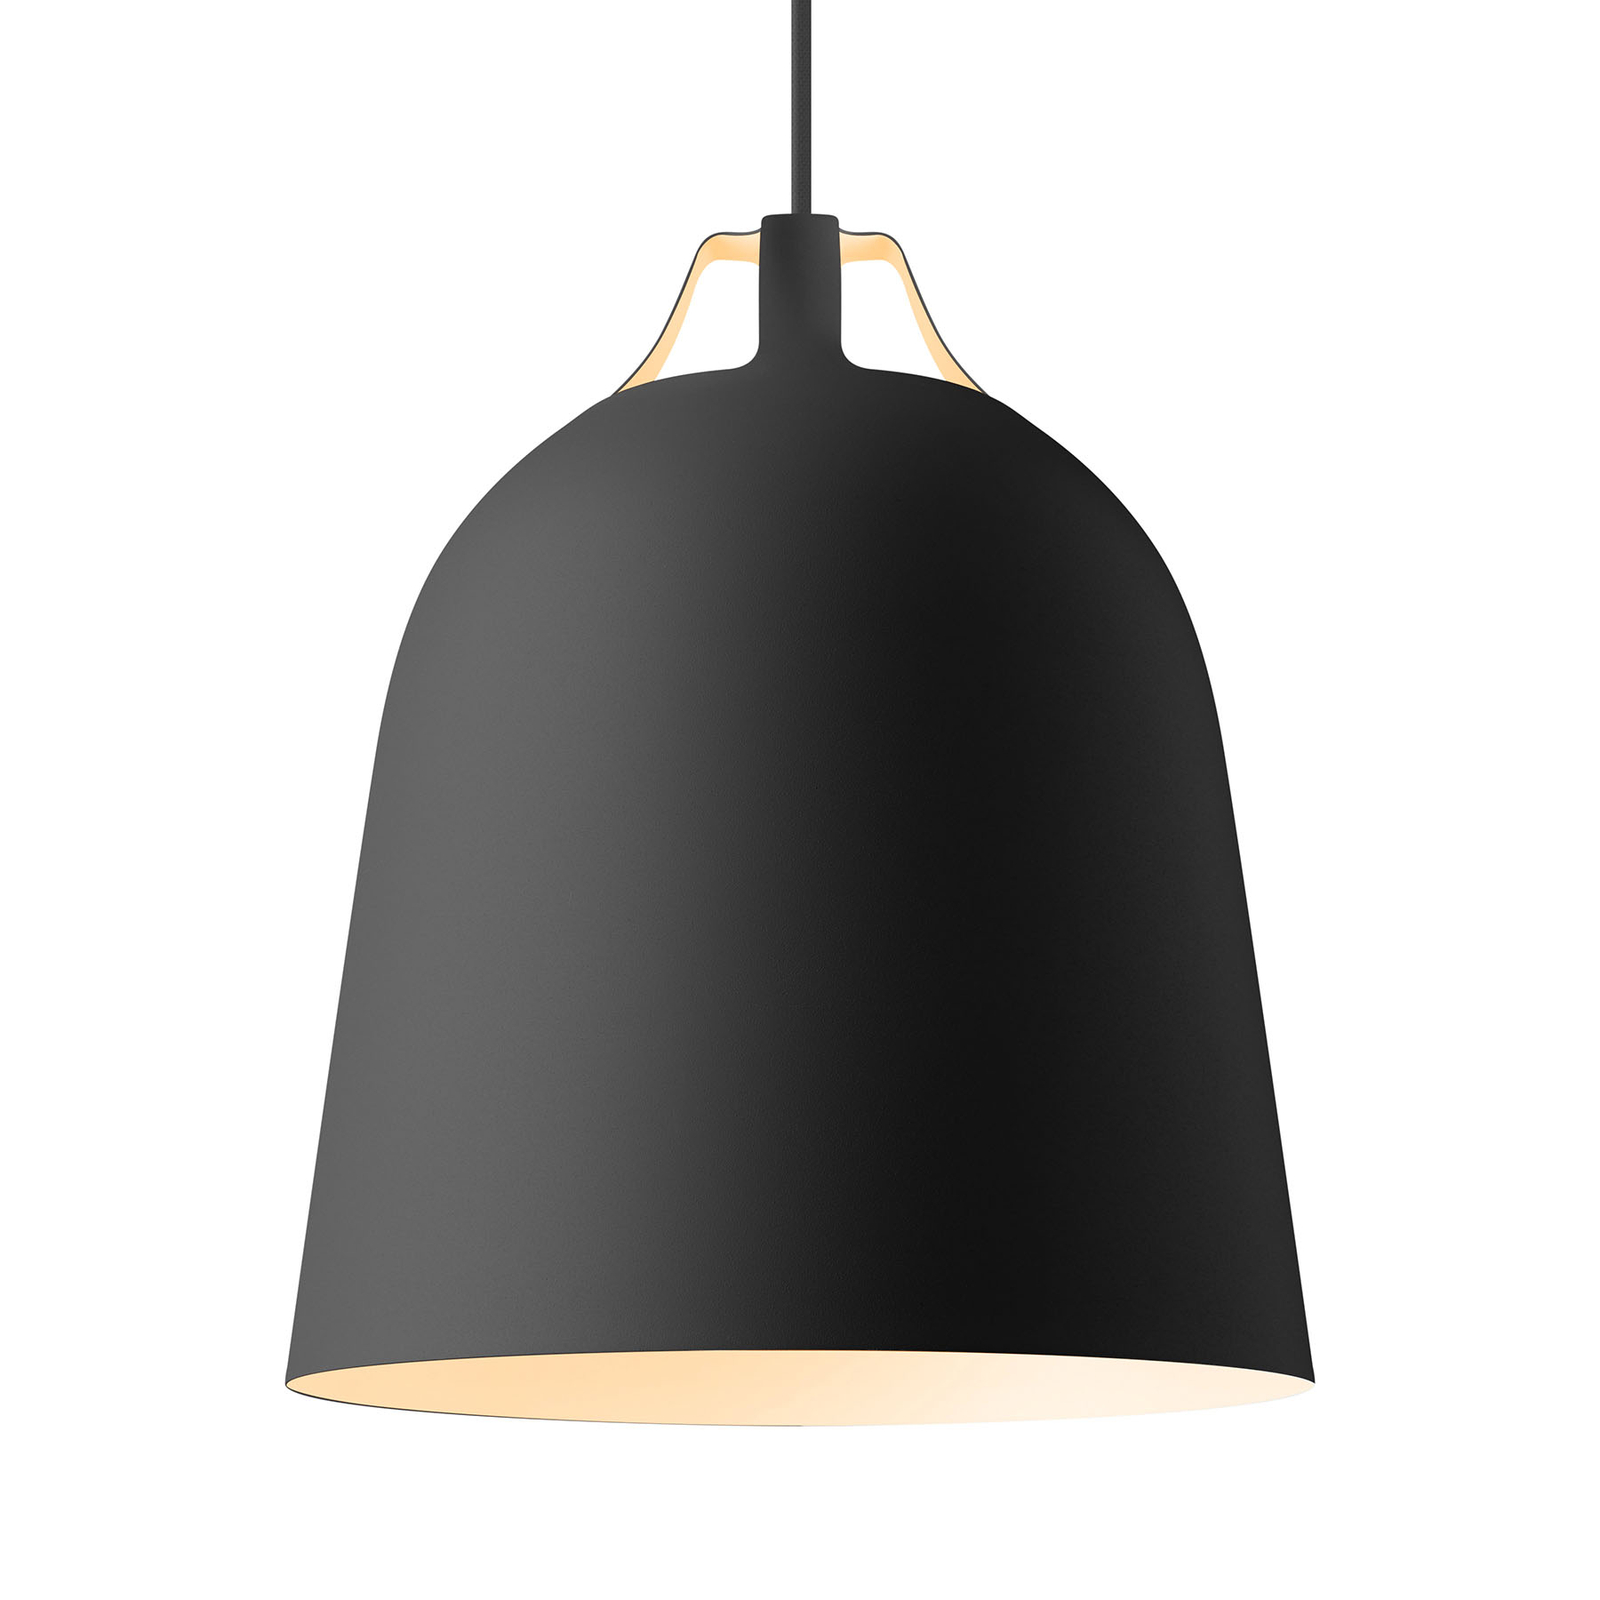 EVA Solo Clover hængelampe, Ø 29cm, sort